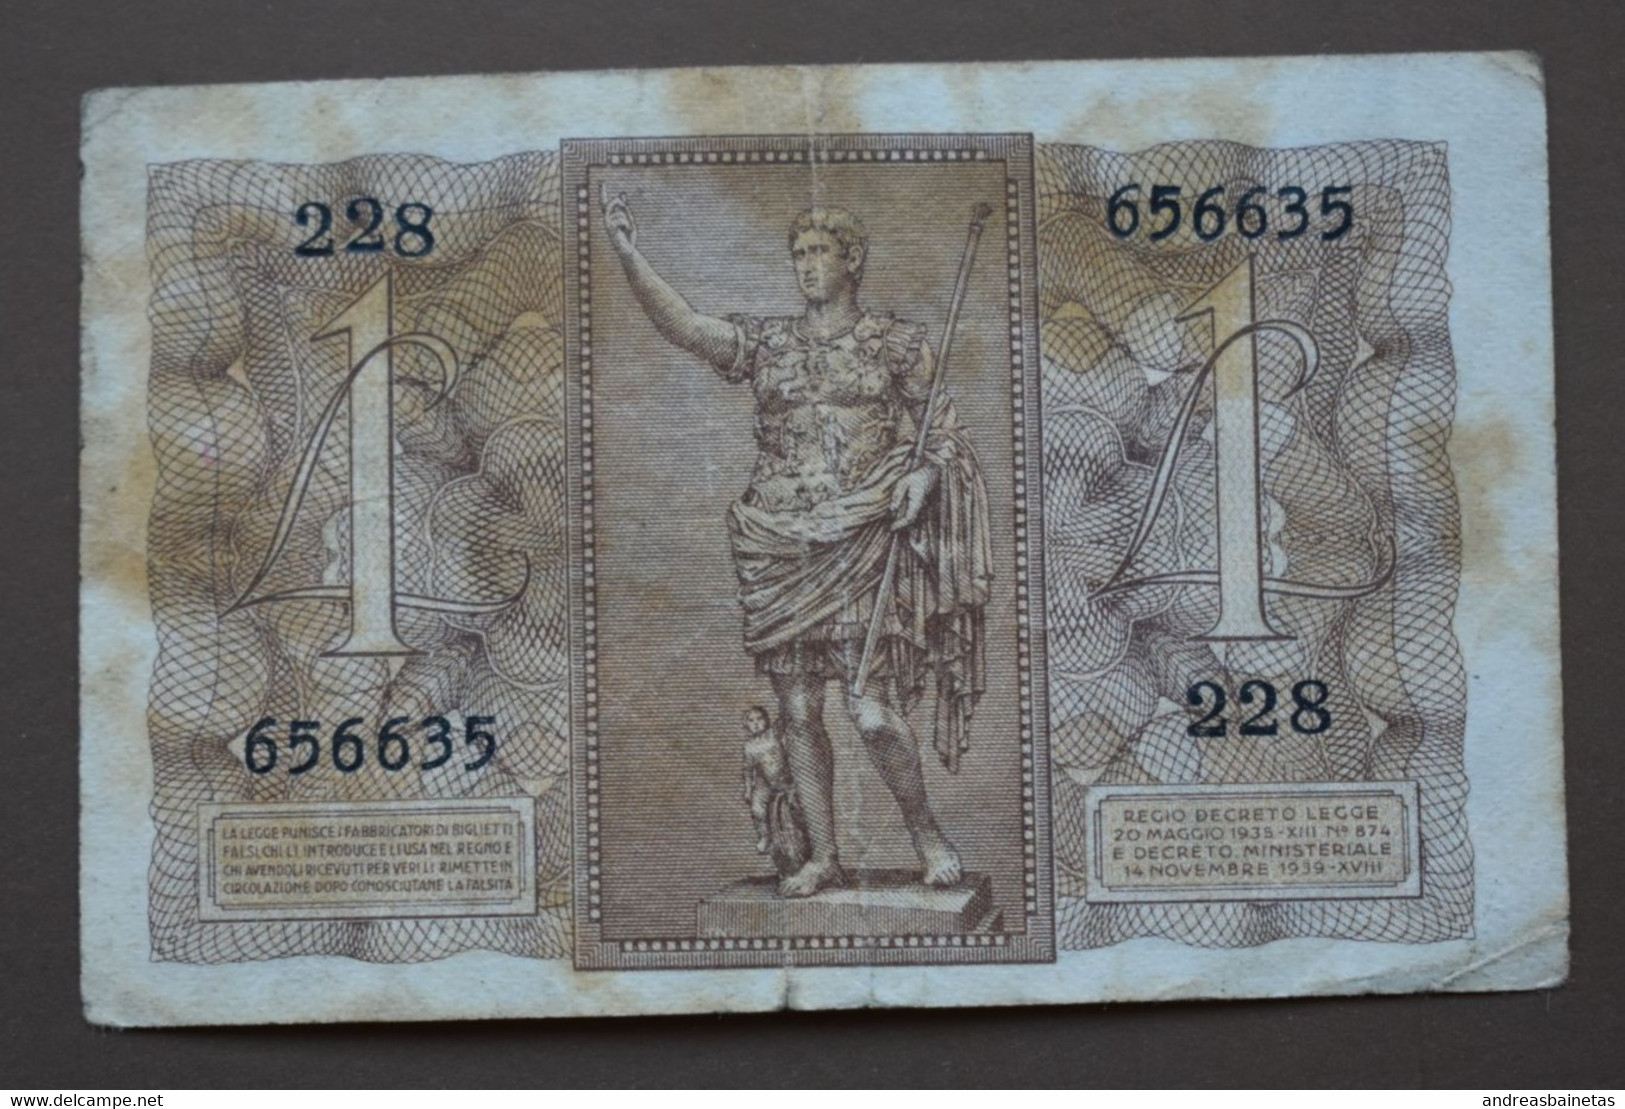 ITALY Banknotes  1 Lira 1939 F  REGNO D'ITALIA Biglietto Di Stato A Corso Legale Lire VNA - Italia – 1 Lira